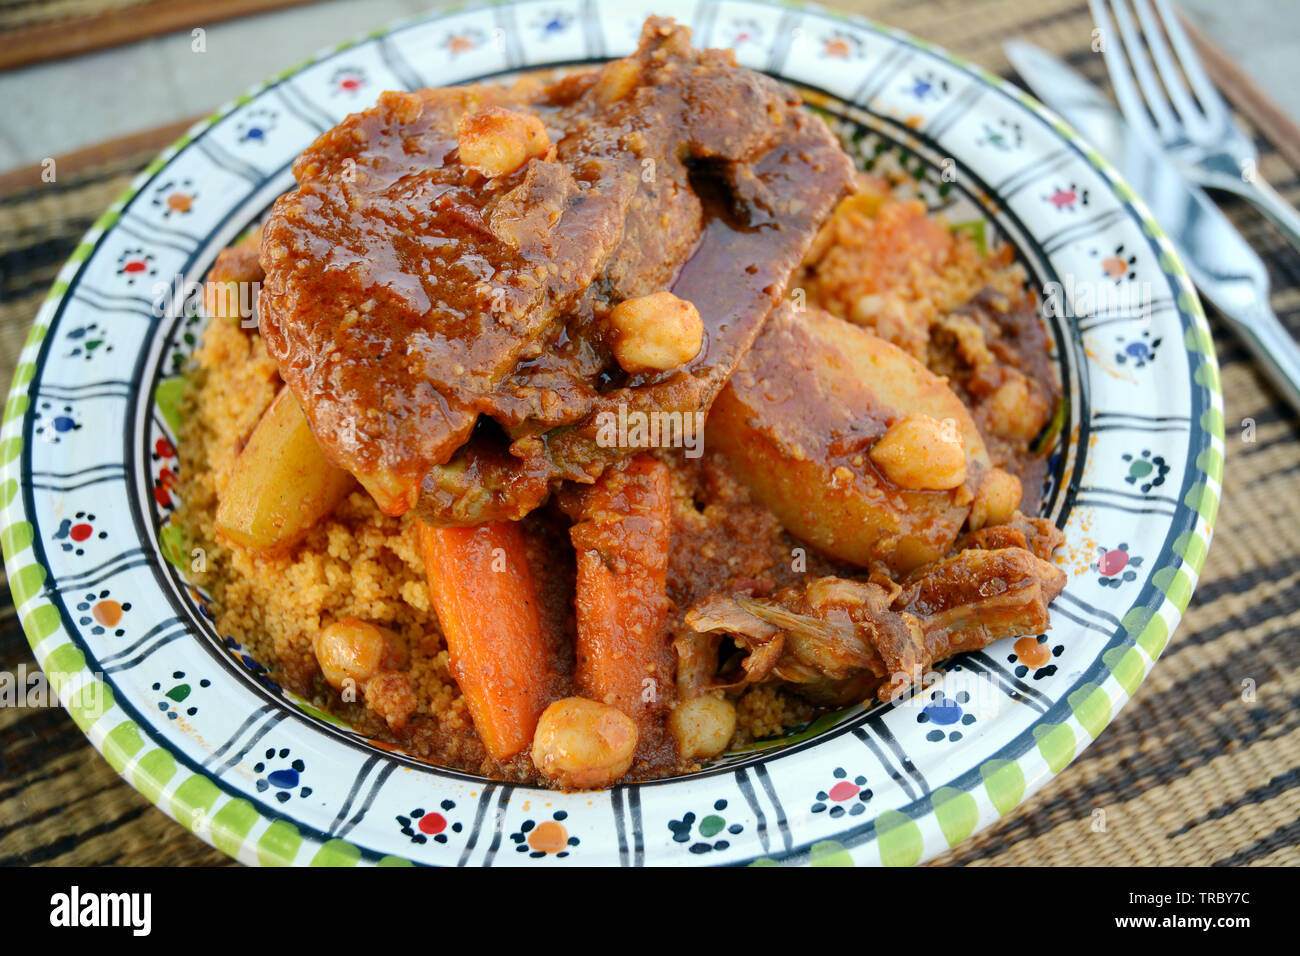 Ein traditioneller Nordafrikanischer Schüssel Couscous mit Lamm, Kichererbsen und Gemüse, serviert in einem Restaurant in der Medina von Tunis, Tunesien. Stockfoto